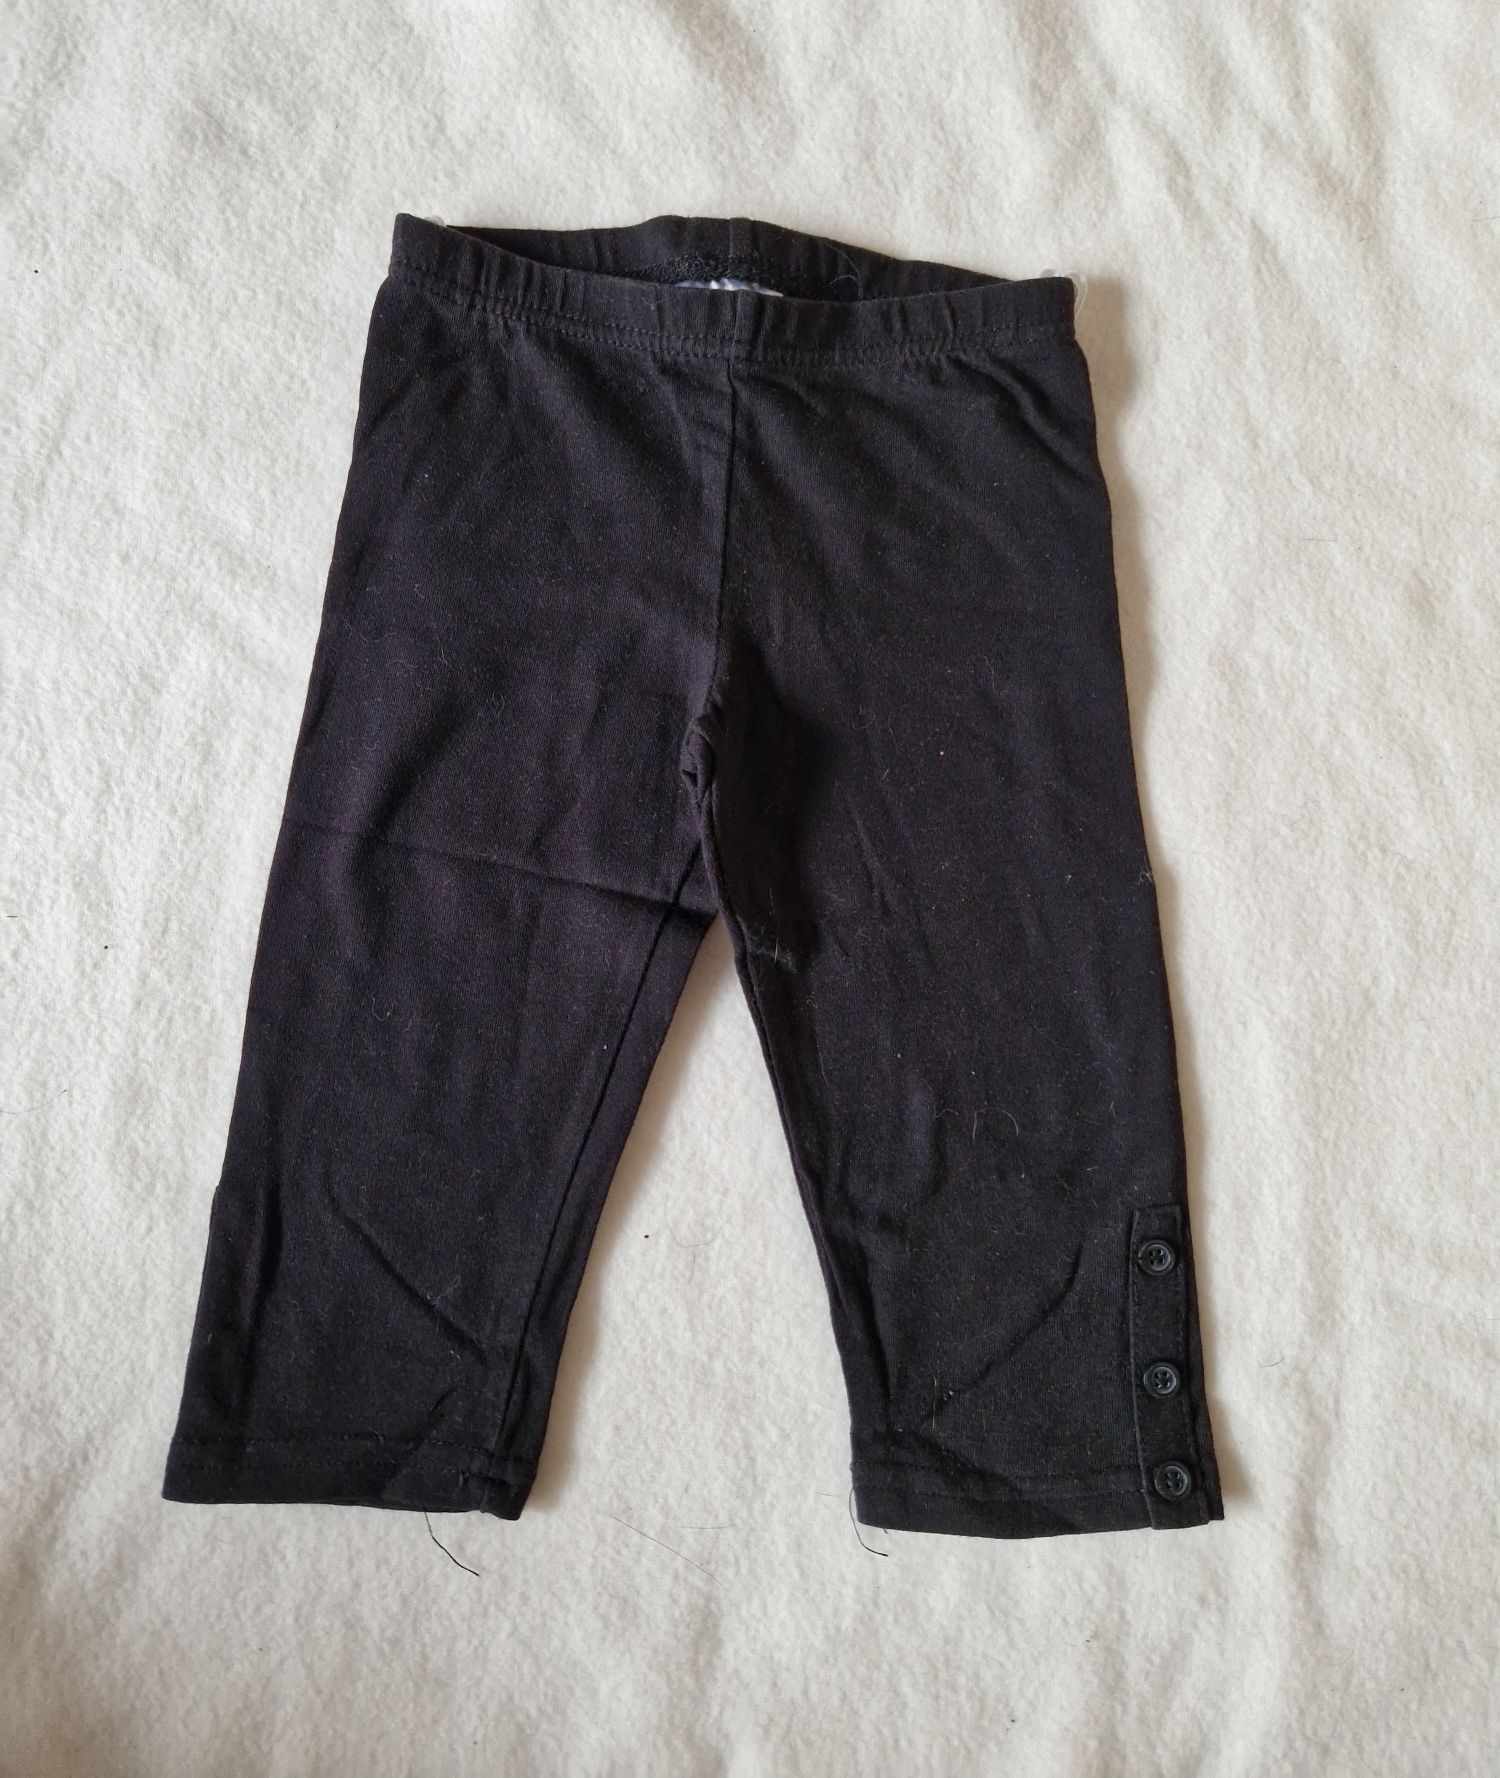 Spodnie 3/4 krótkie czarne Zara 3 lata 98 leginsy